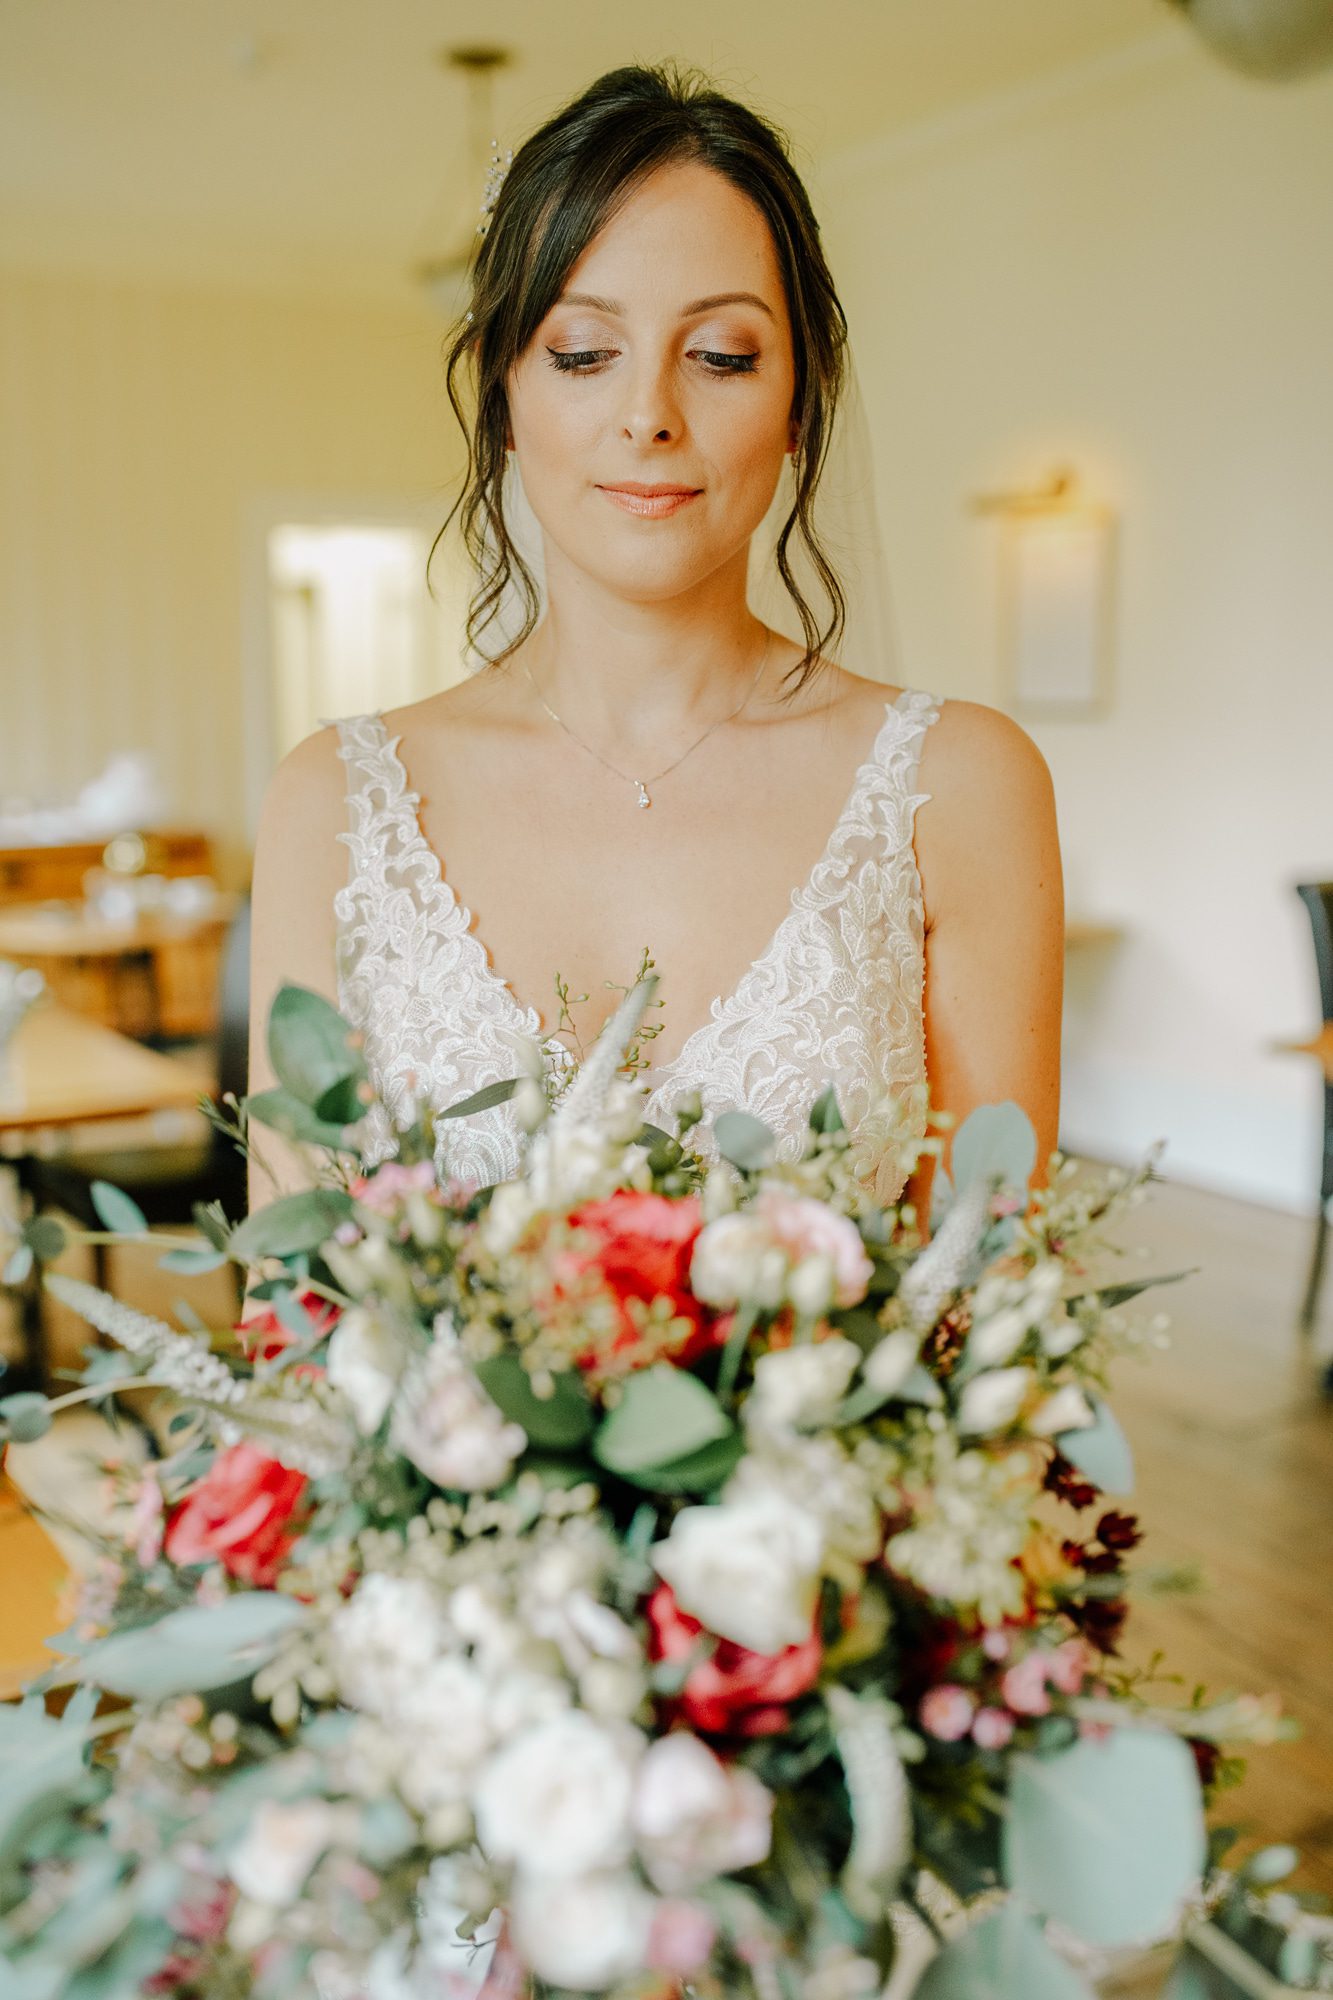 Sophie marries Ben in Essense of Australia | Bridal Boutique Warwickshire